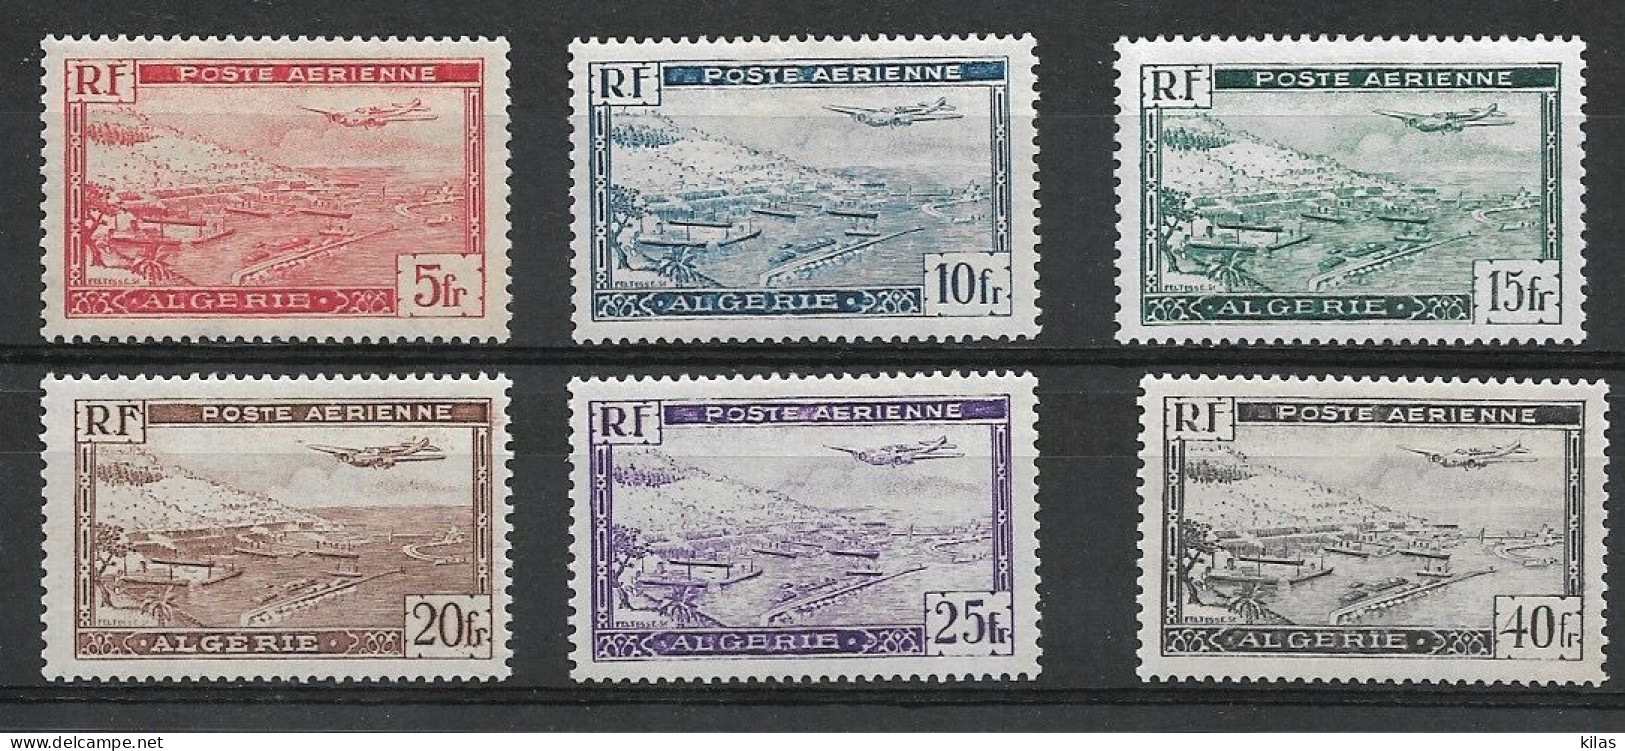 ALGERIA 1946/47 AIRMAIL MNH - Airmail